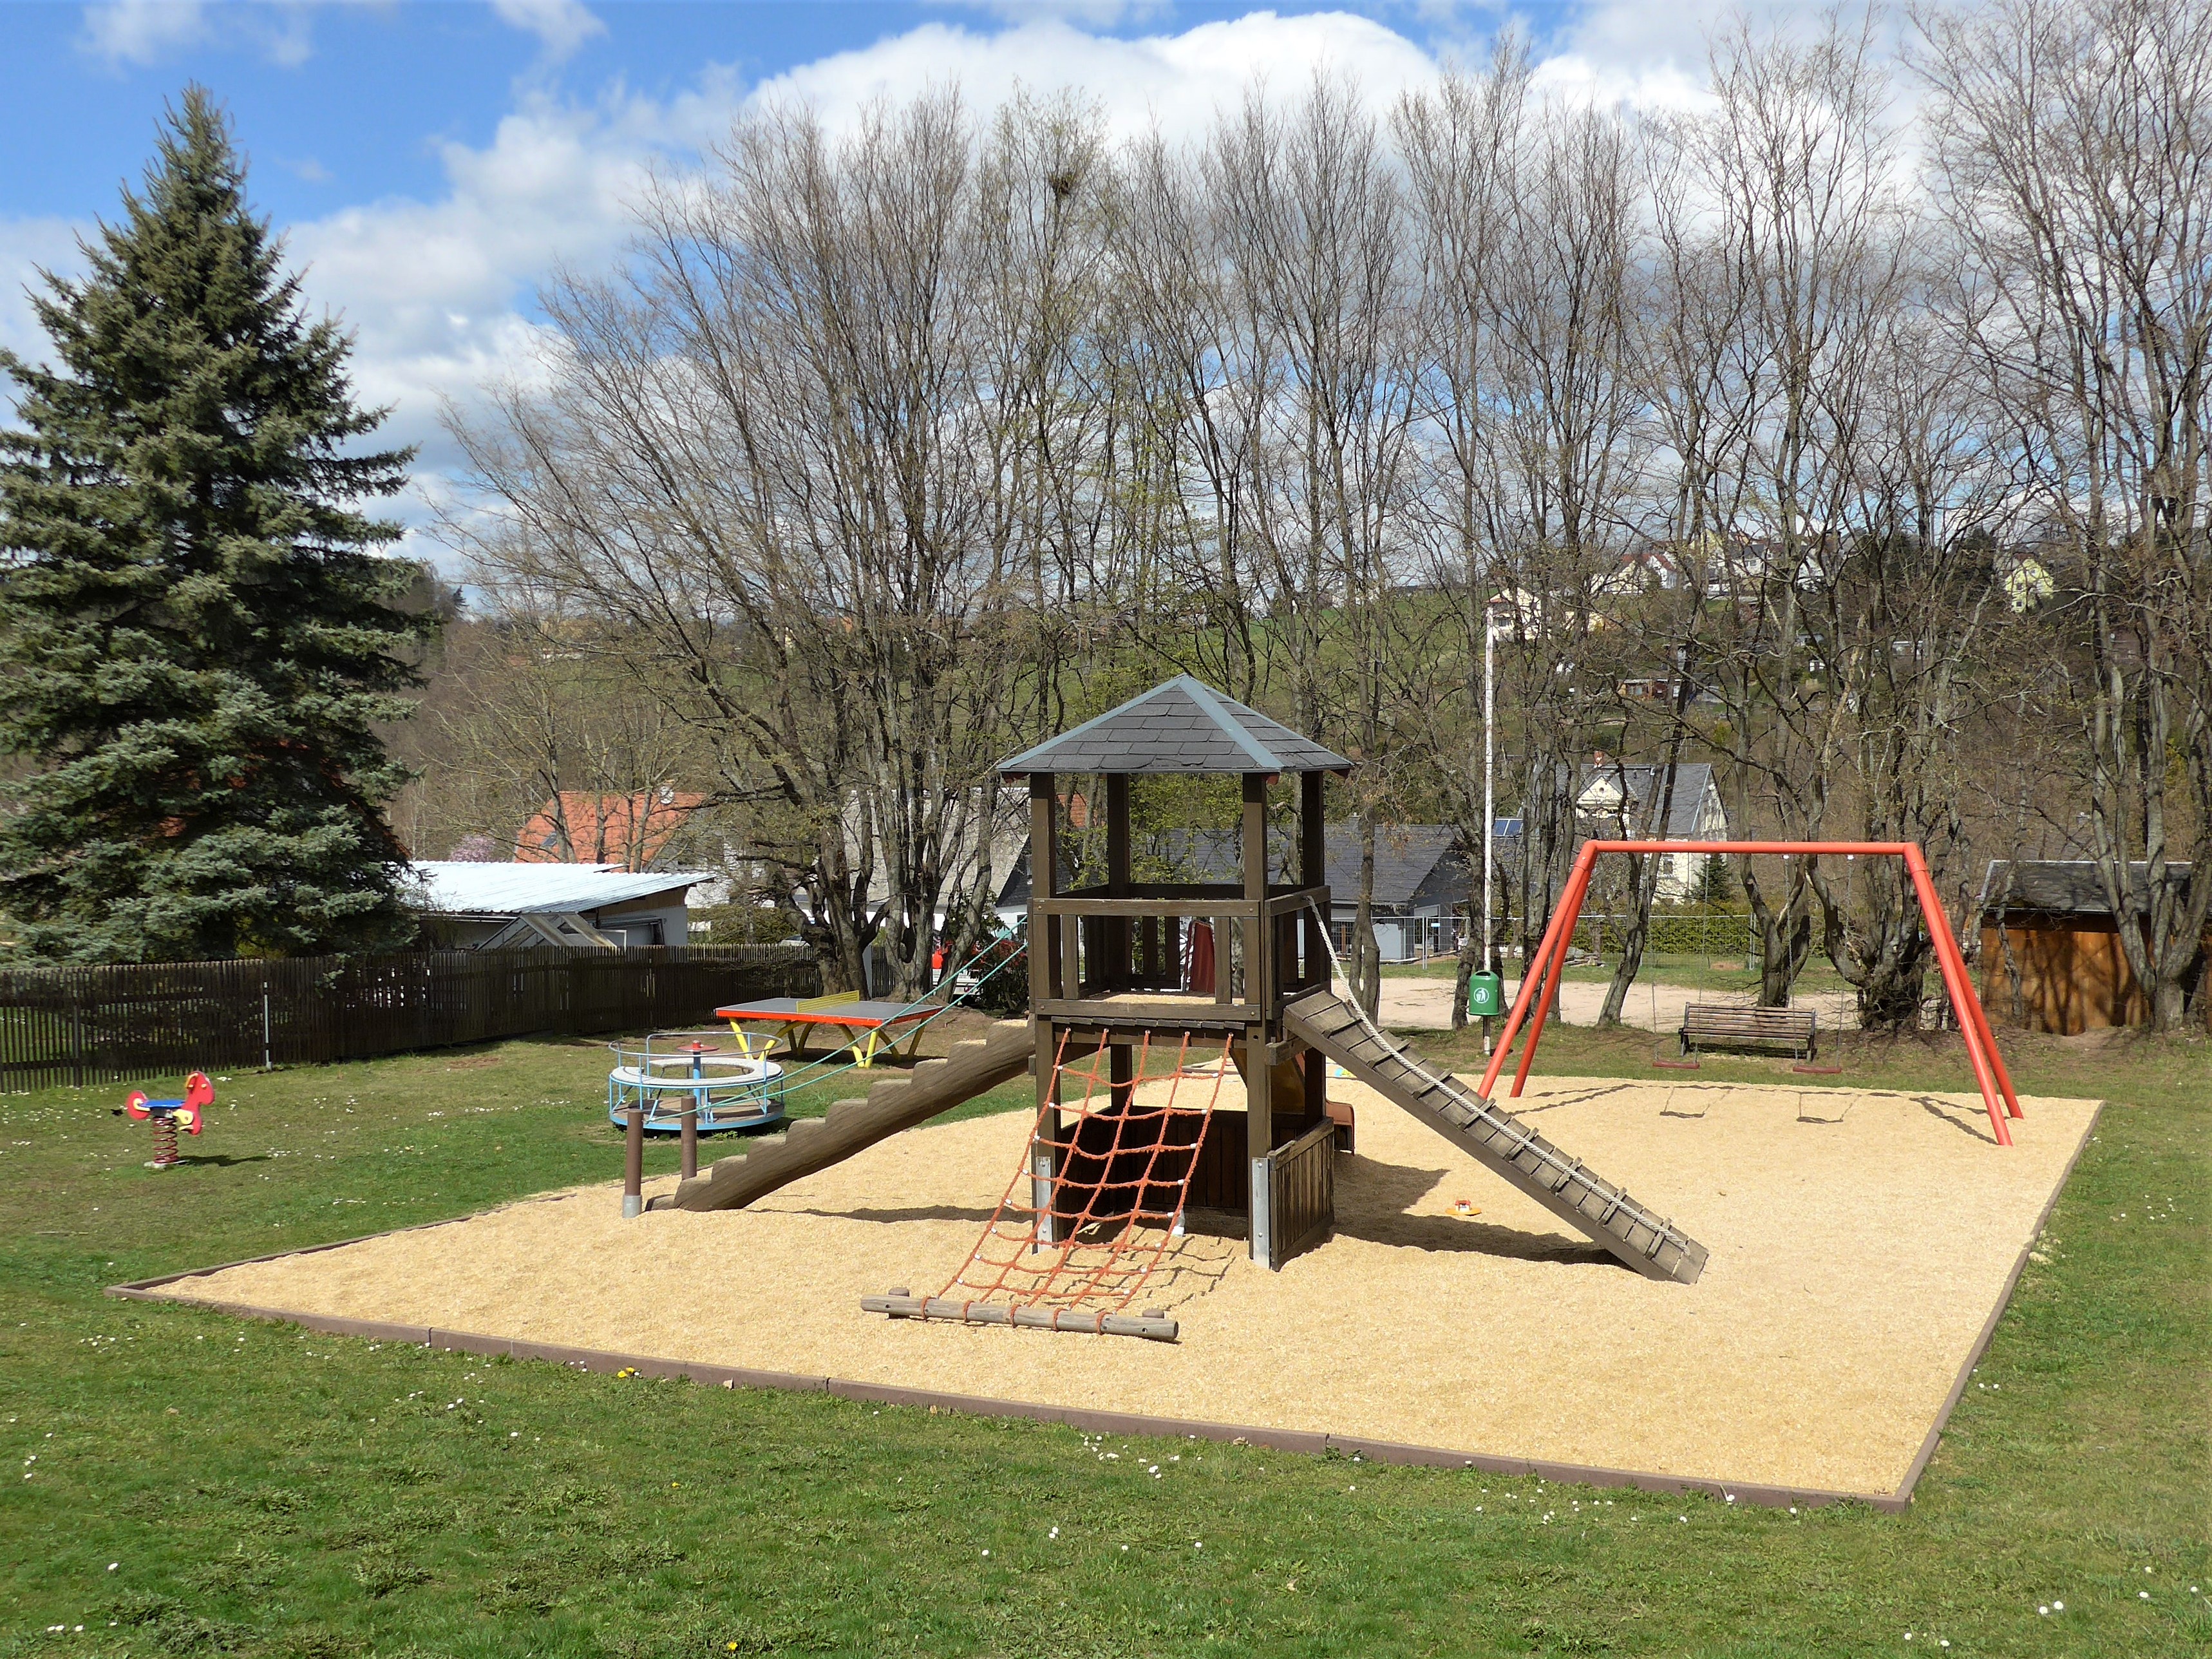 Spielplatz in Marienau mit 2 Bänken, Kinderkarussell, Tischtennisplatte, Sandkasten, Rutschenkombination, Doppelschaukel, Federspielgerät